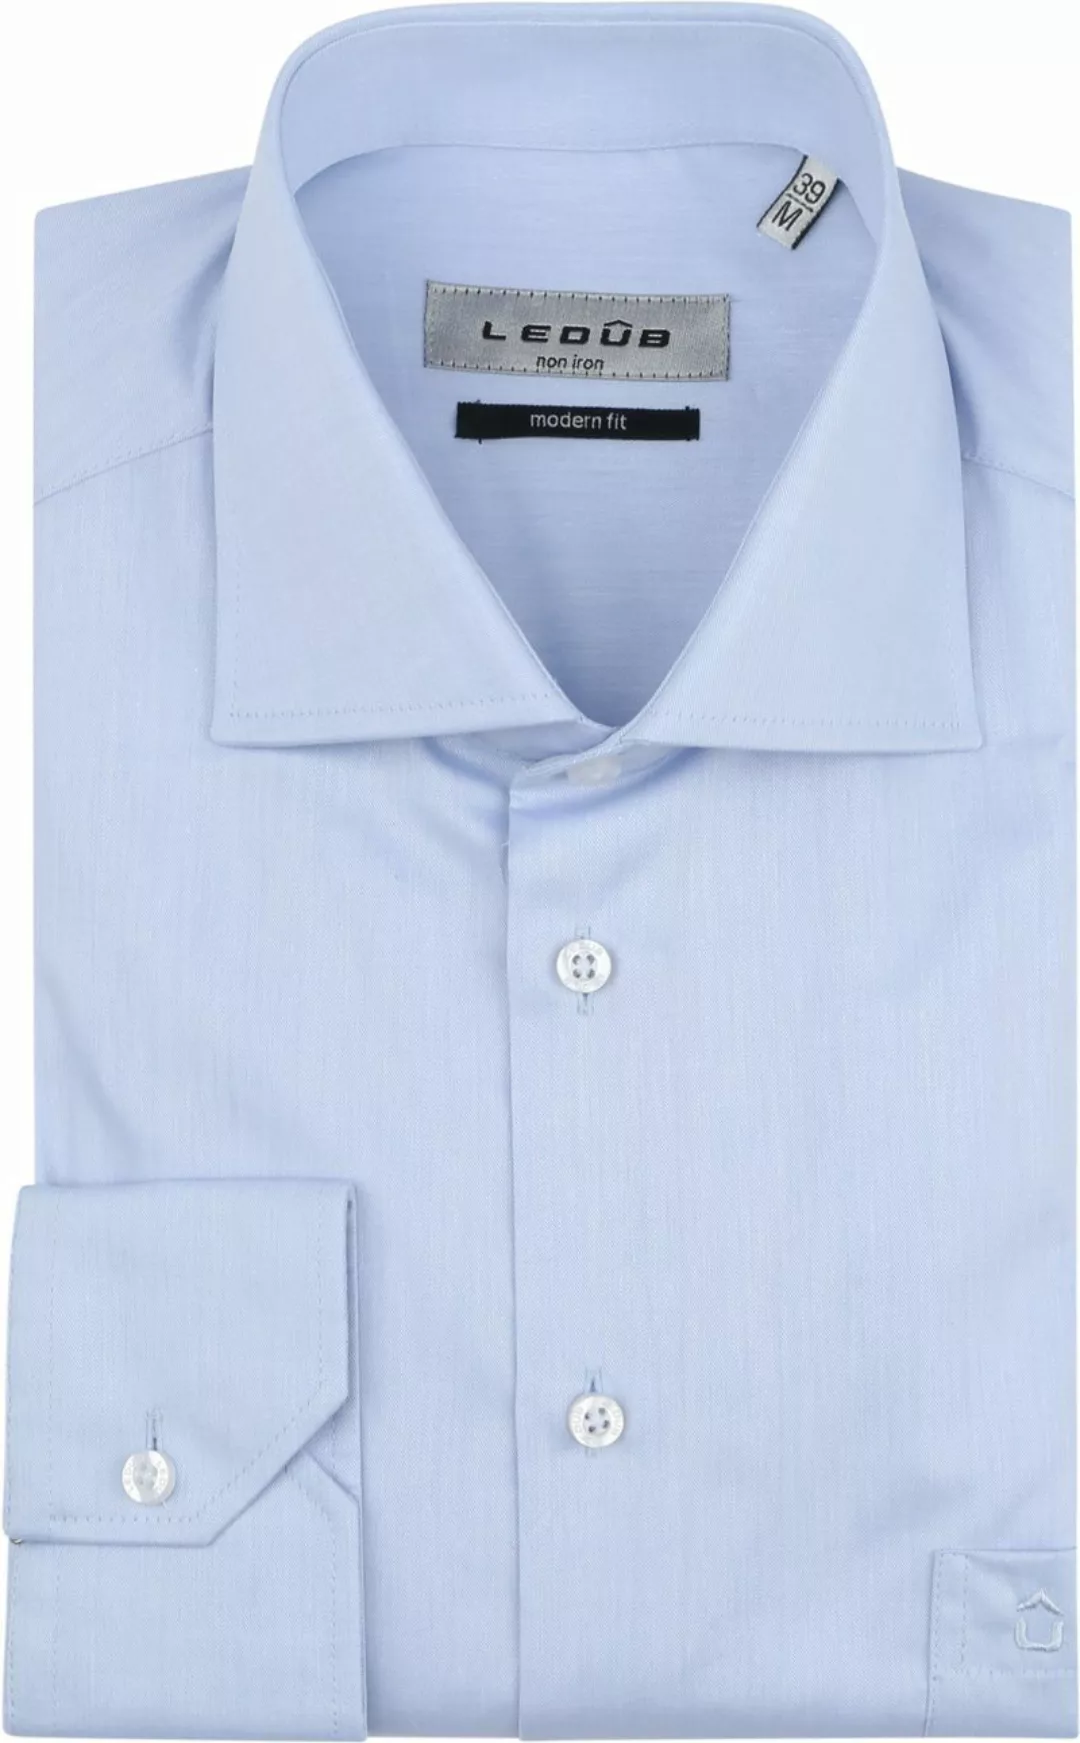 Ledub Hemd Hellblau Brusttassche - Größe 42 günstig online kaufen